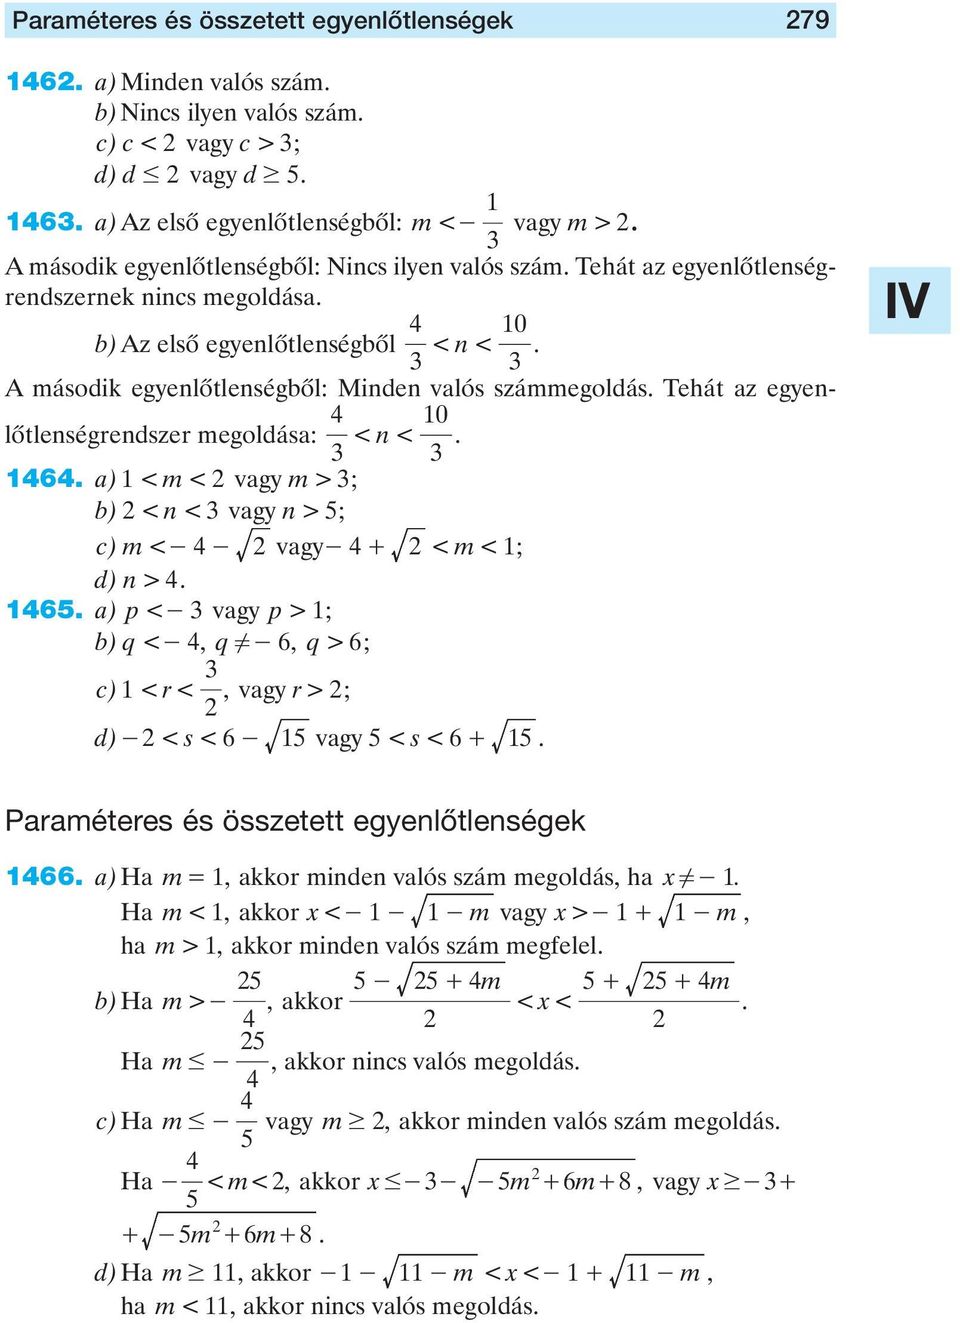 egyenlôtlenségrendszer megoldása: < n < 0 a) < m < vagy m > ; b) < n < vagy n > ; c) m< -- vagy- + < m< ; d) n > 6 a) < - vagy > ; b) q< -, q!